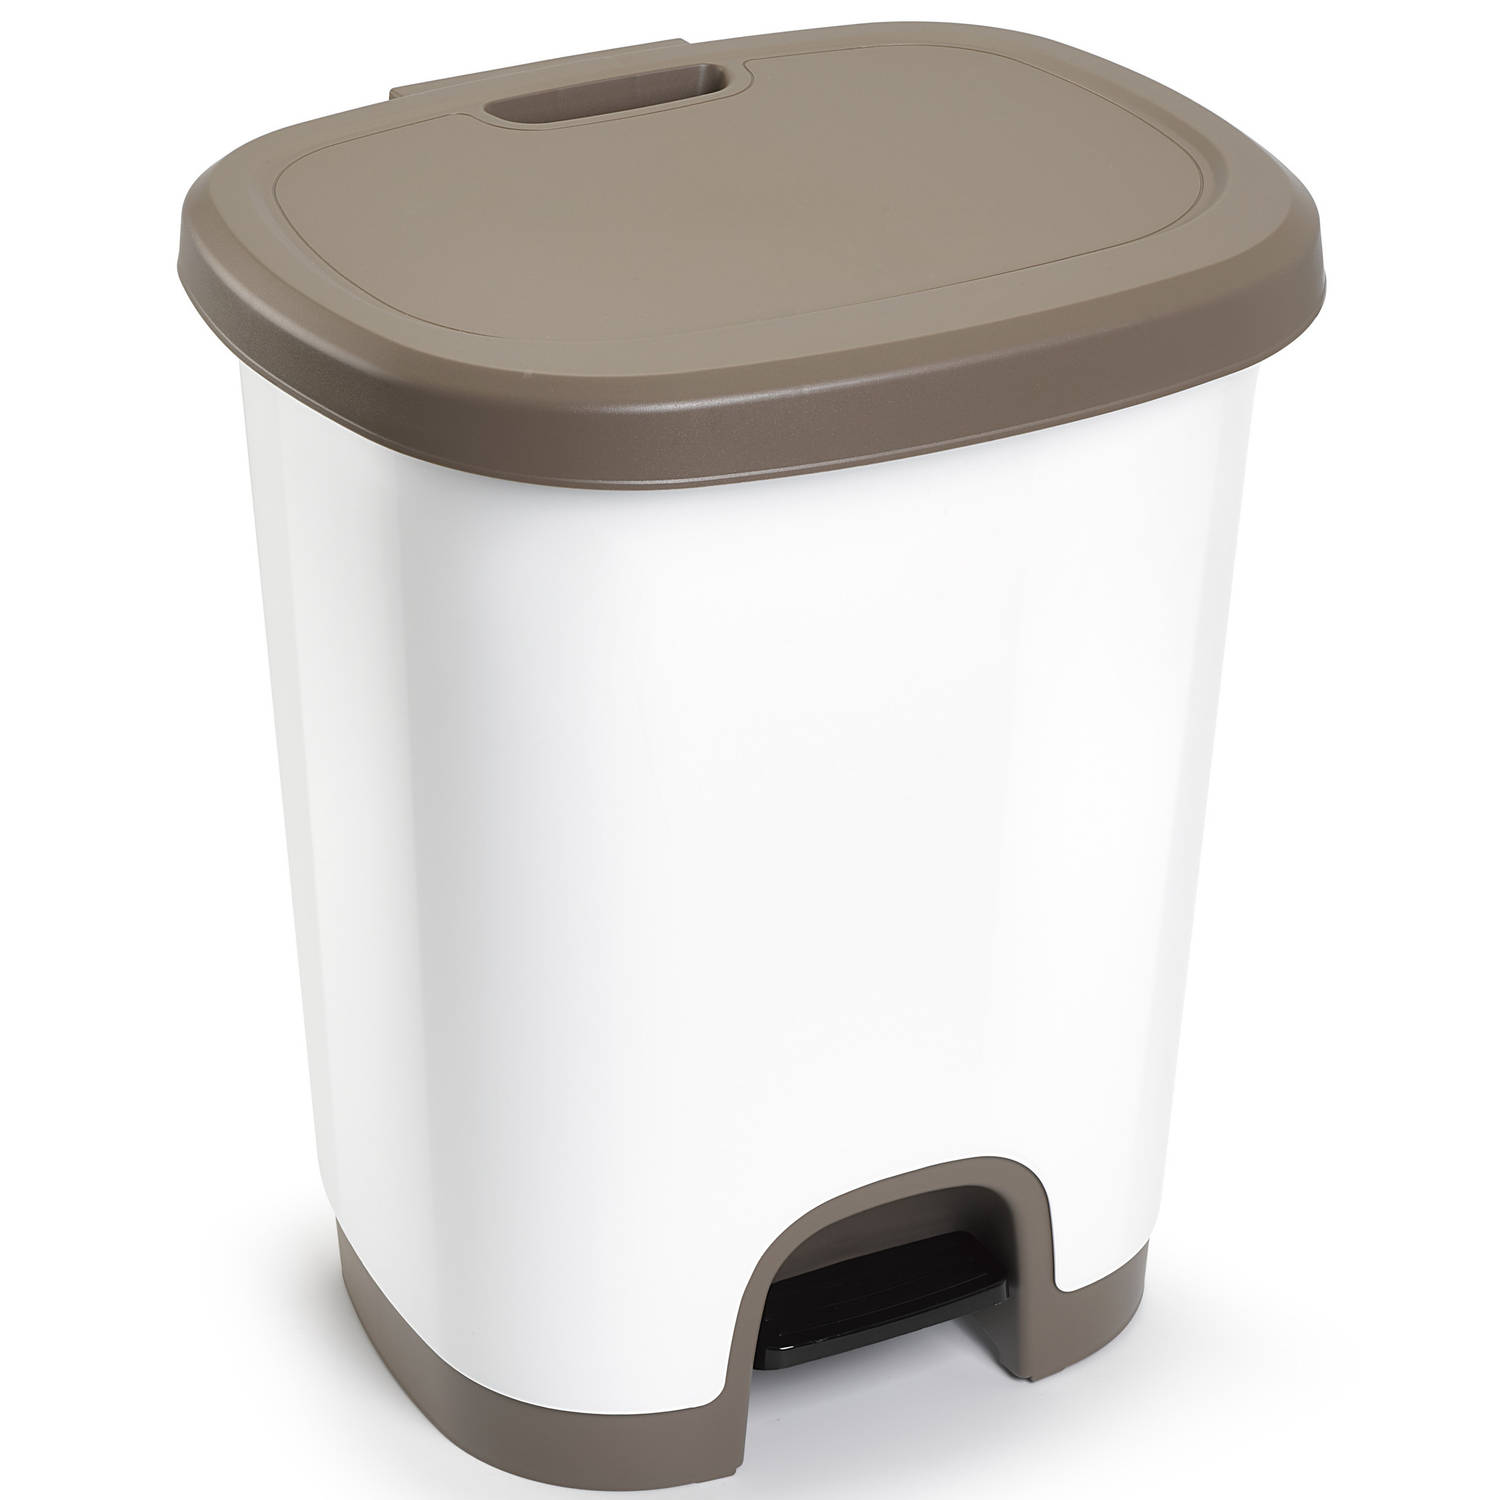 Afvalemmer/vuilnisemmer/pedaalemmer 27 liter in het wit/taupe met deksel en pedaal - Pedaalemmers